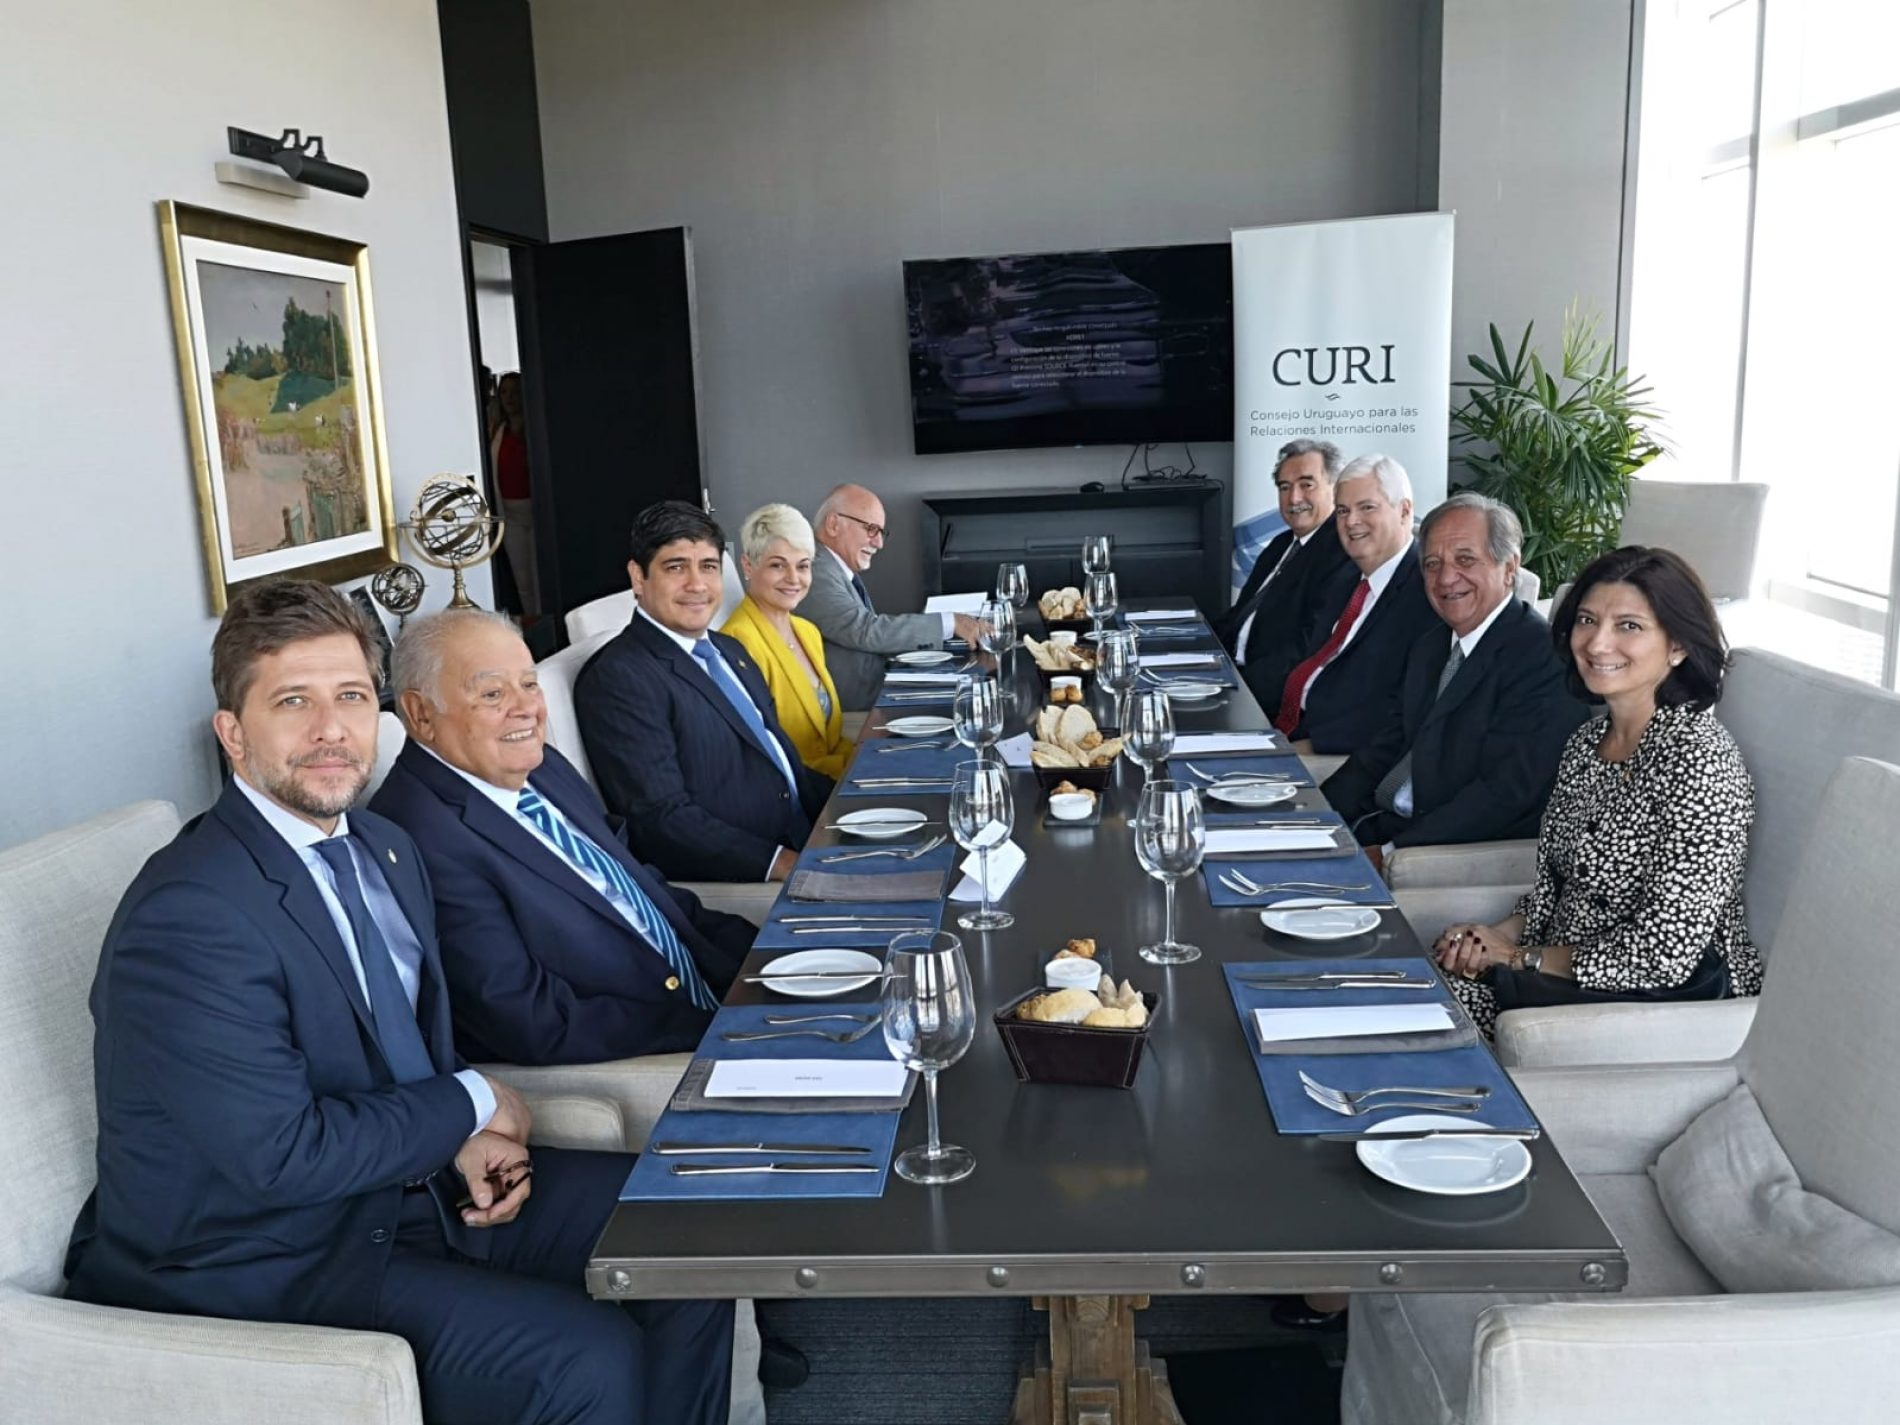 Reunión con el Presidente de Costa Rica, Carlos Alvarado Quesada, y el Canciller Manuel Ventura Robles